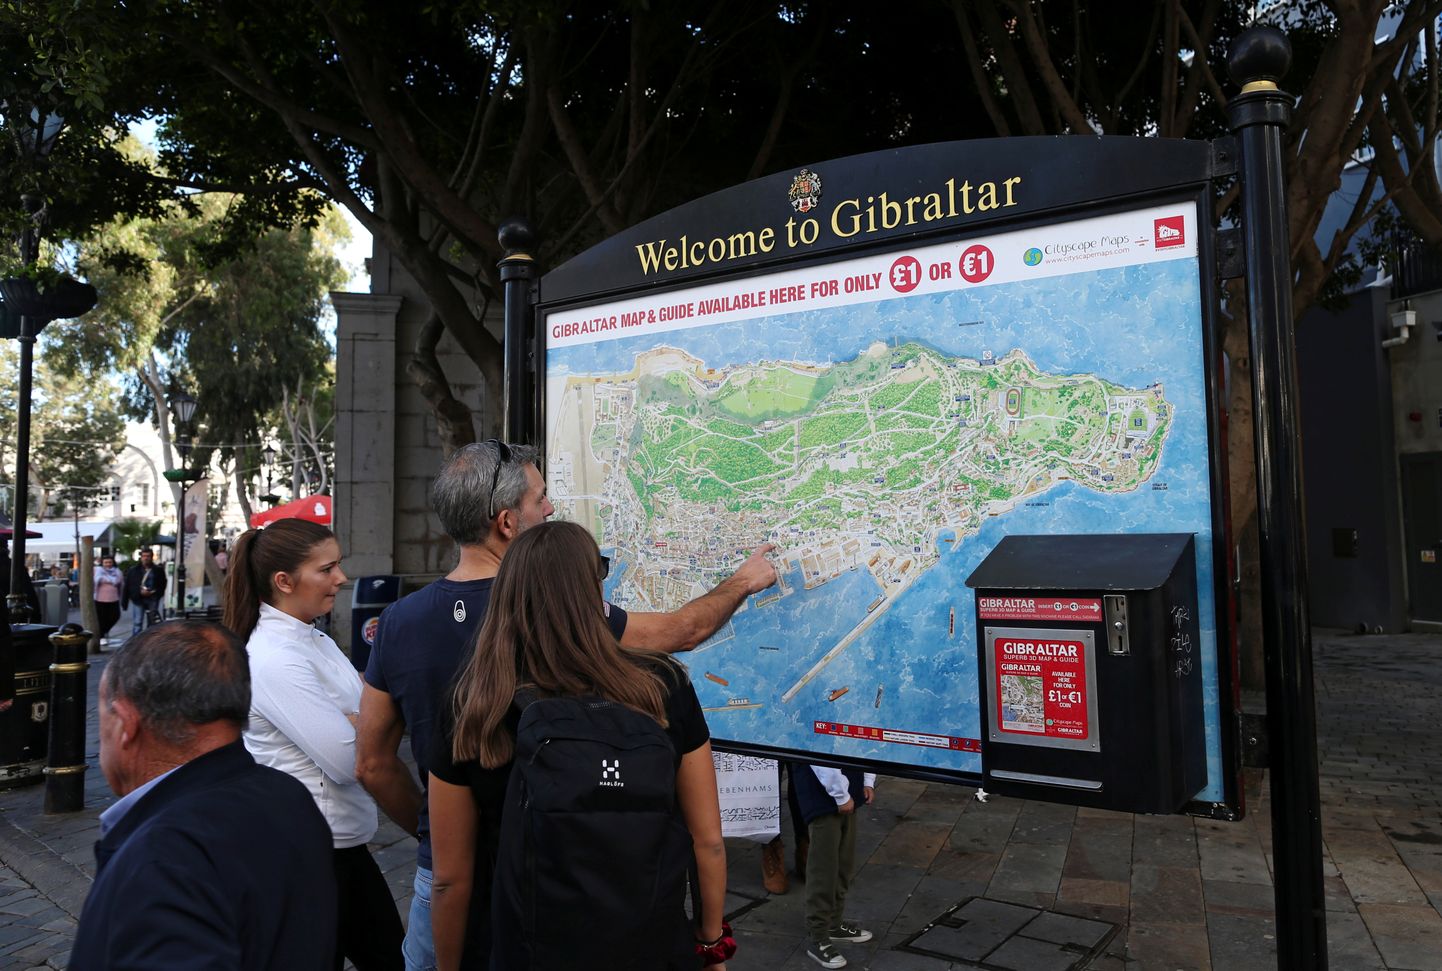 За размахивание ножом и раздевание в общественном месте эстонец получил тюремный срок в Гибралтаре.